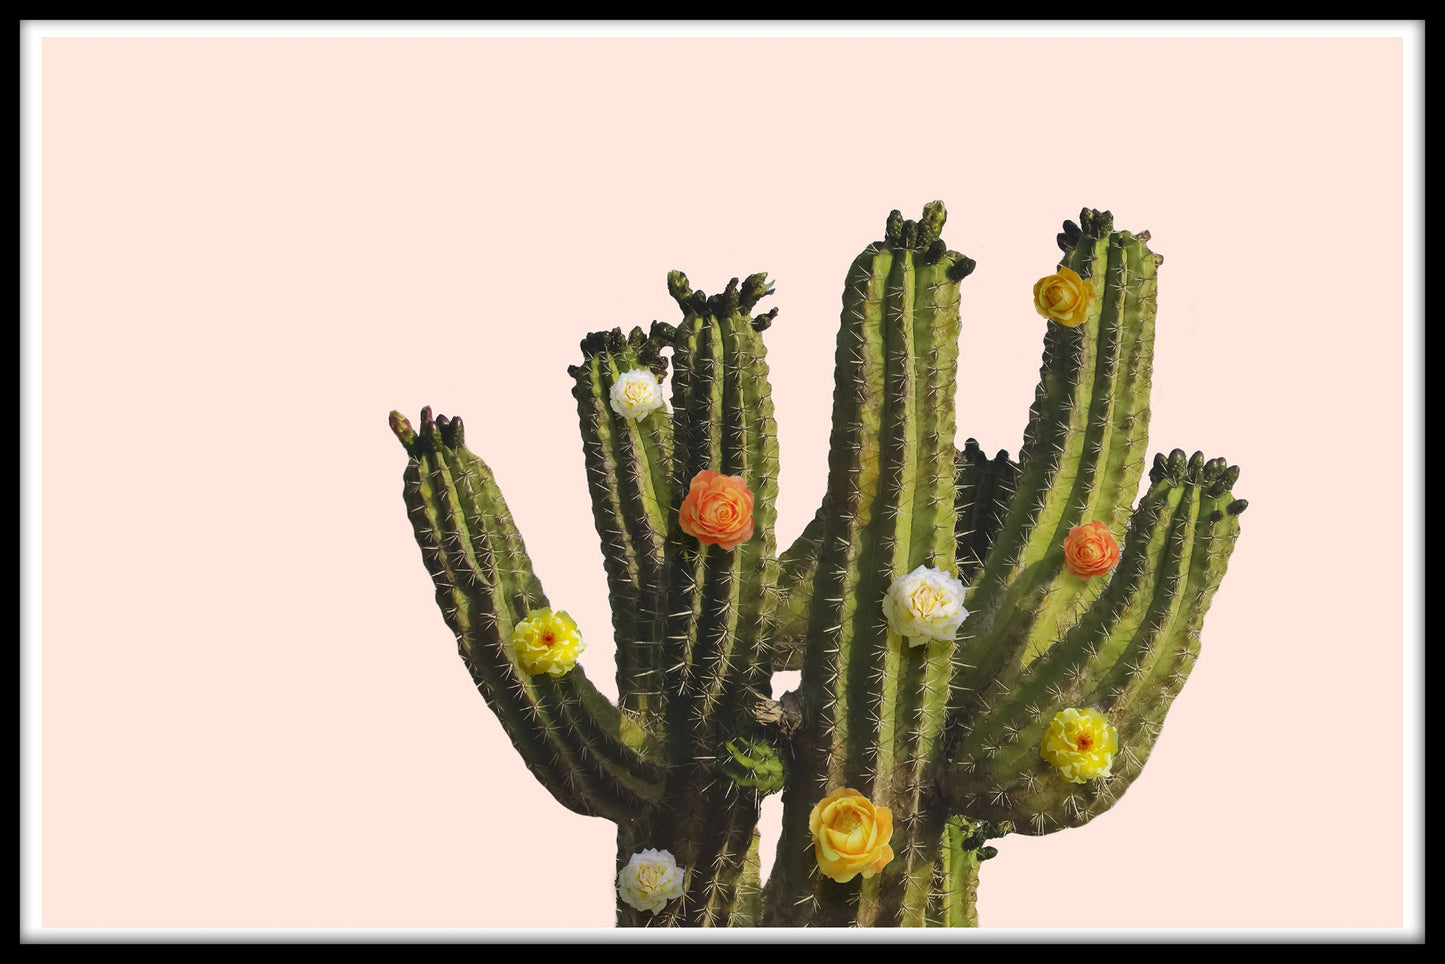  Bloemencactusposter